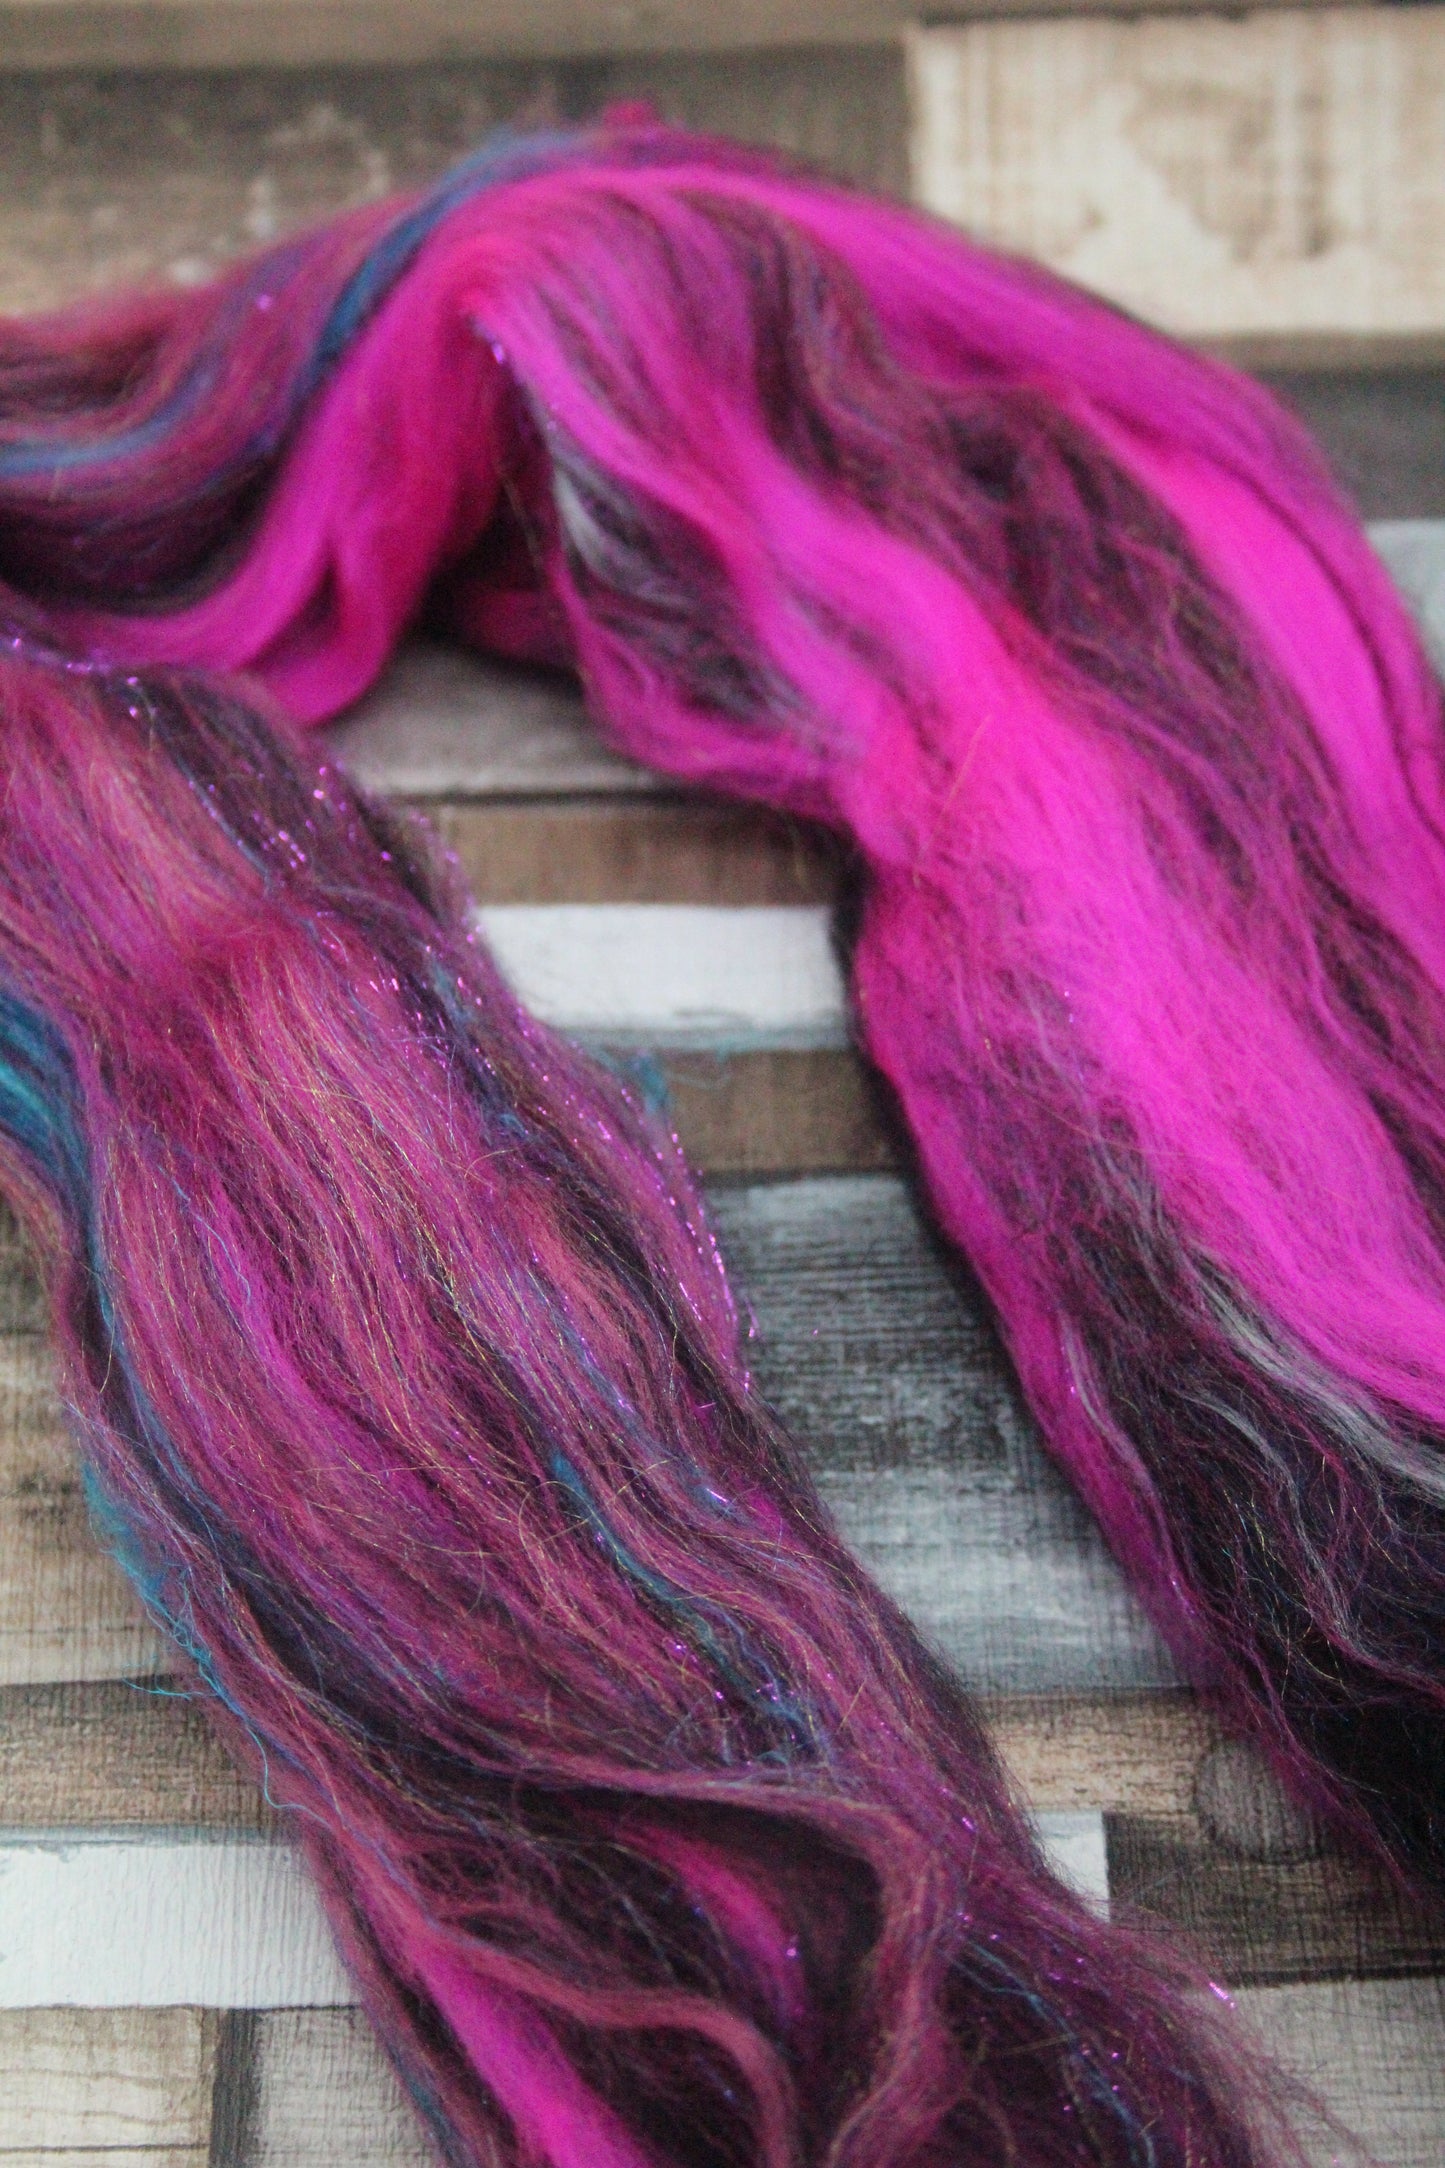 Merino Wool Blend - Pink Black - 22 grams / 0.7 oz  - Fibre for felting, weaving or spinning